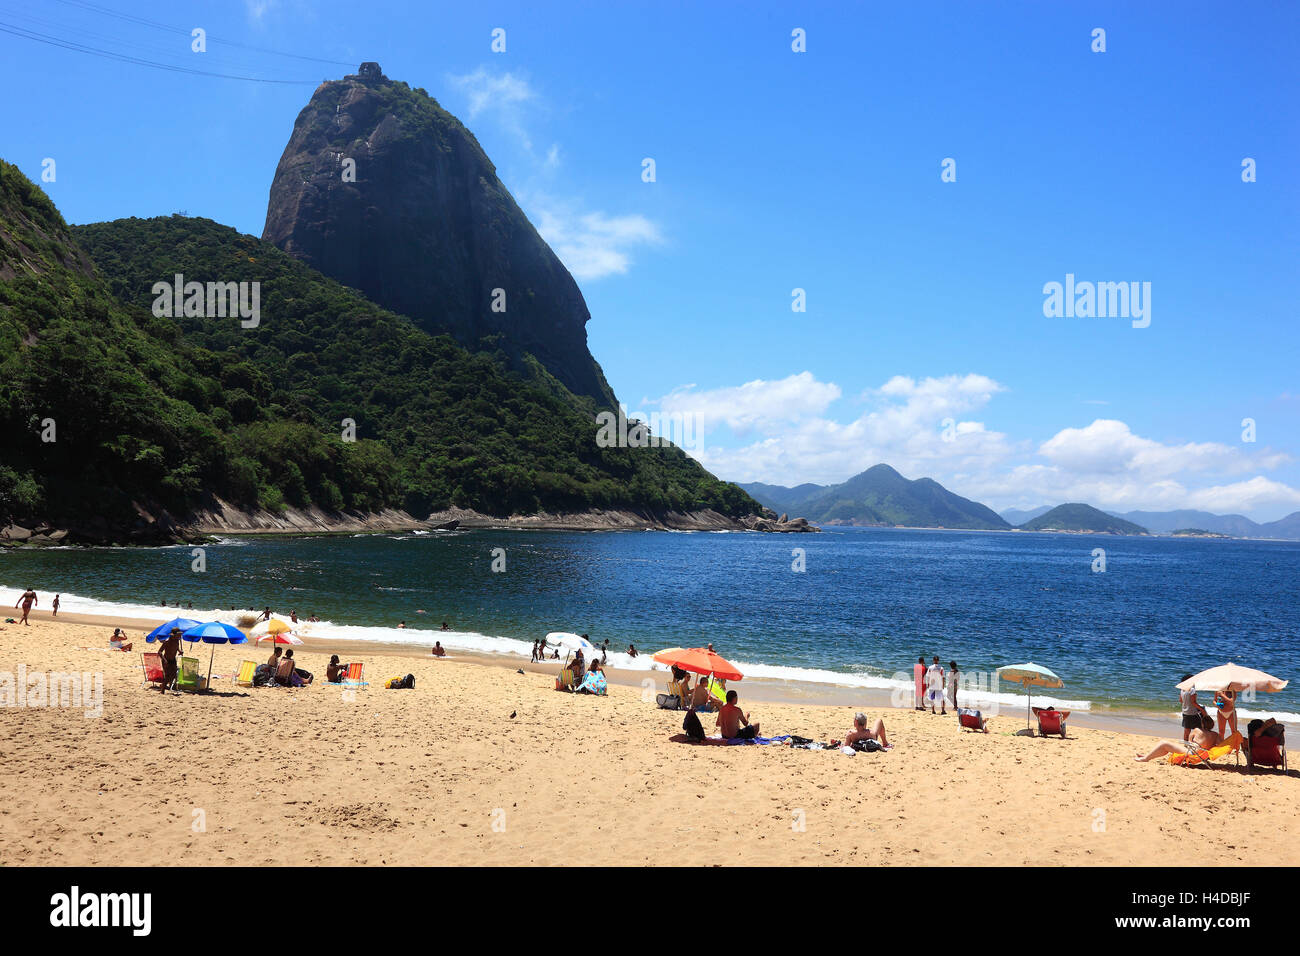 Regardez dehors pour le pain de sucre, au sud de la plage Praia Vermelha de vu, Rio de Janeiro, Brésil Banque D'Images